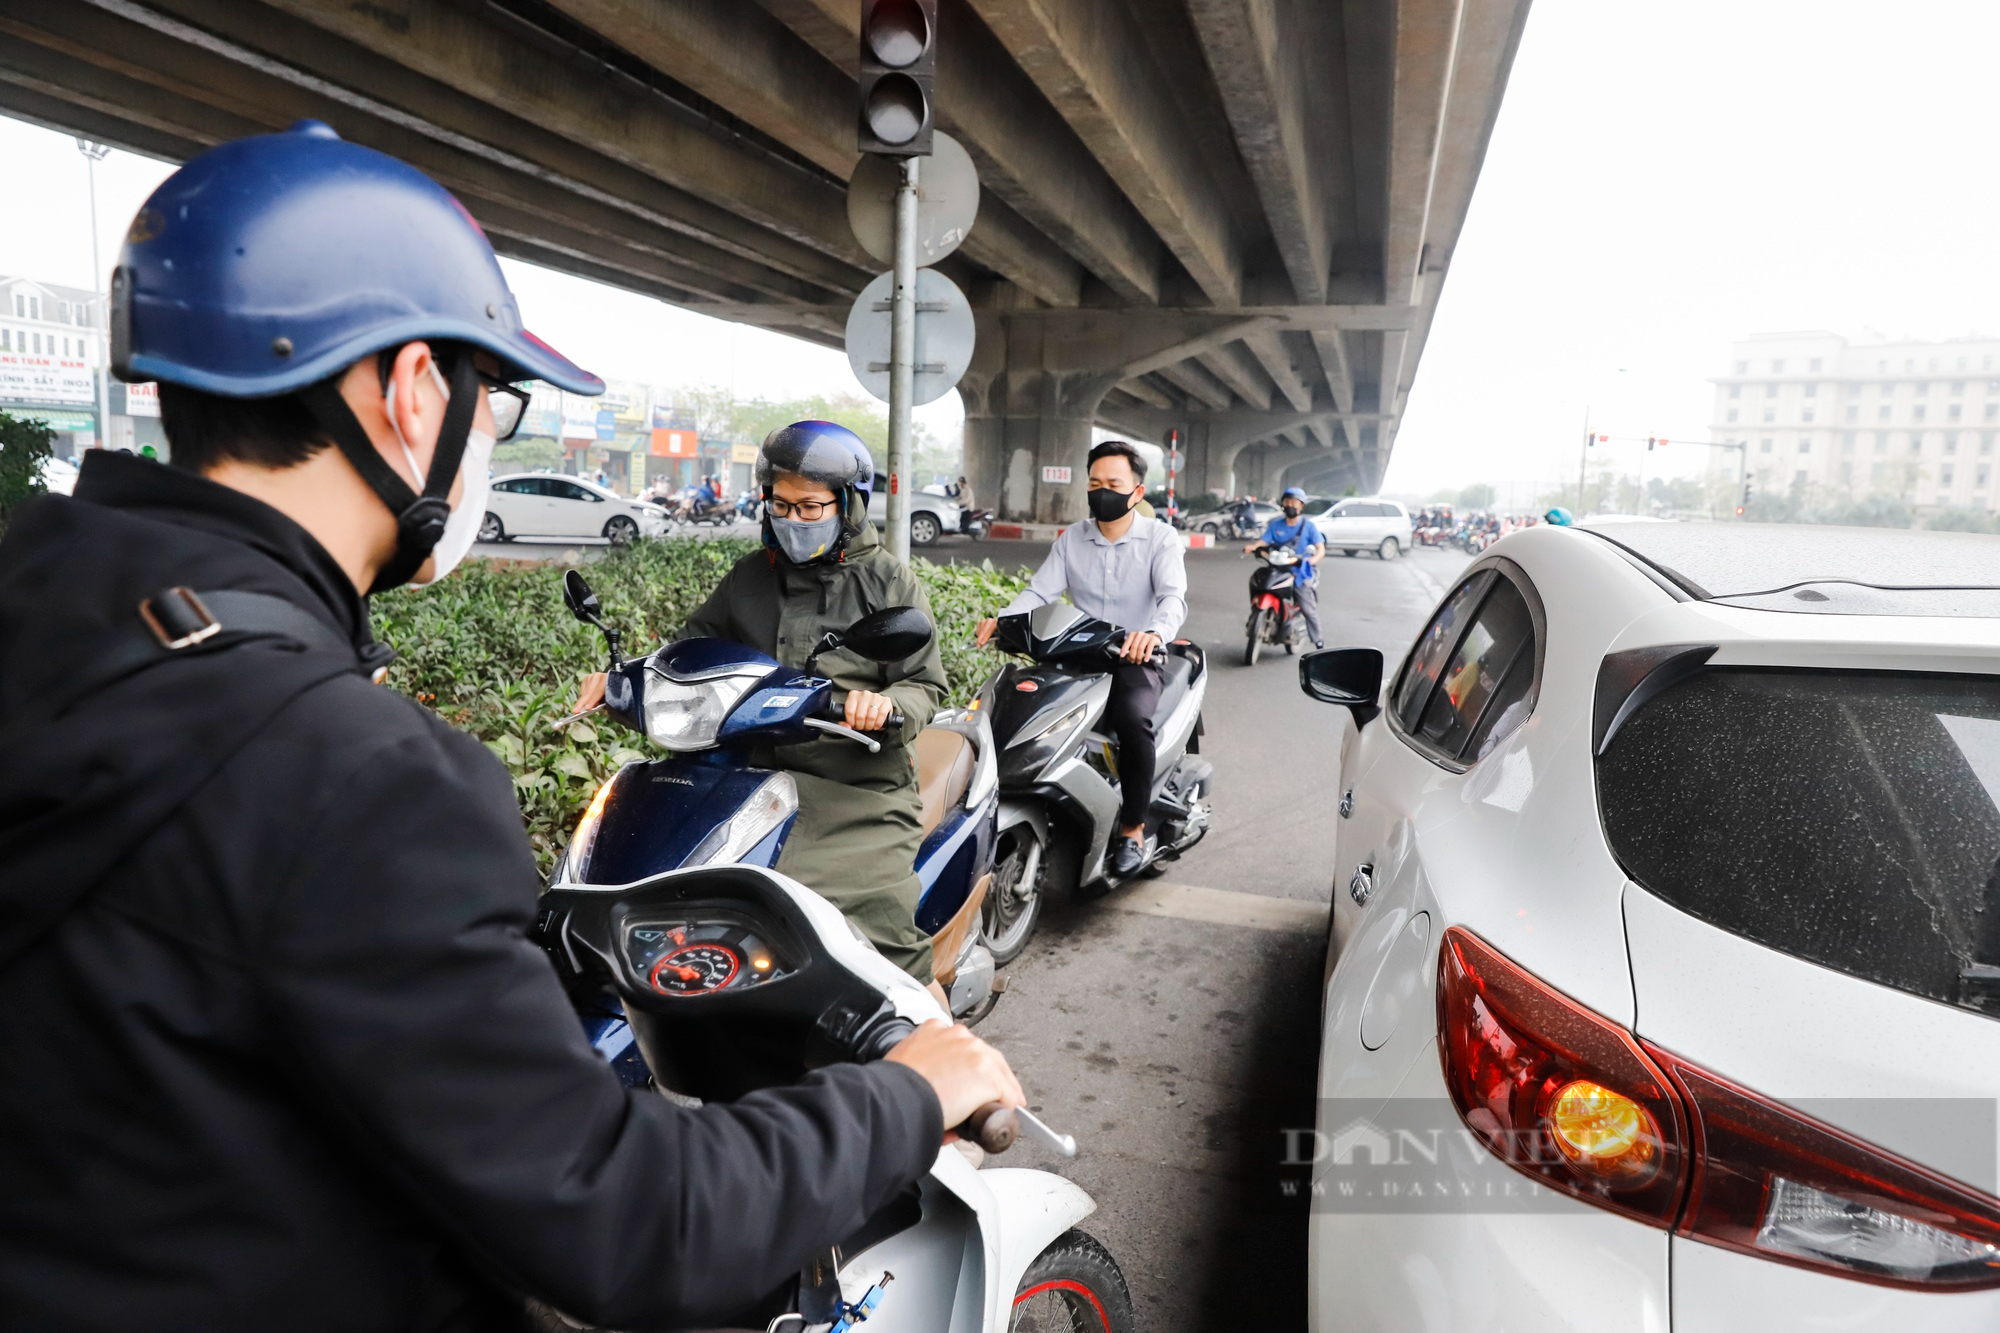 Hàng đoàn xe máy ùn ùn đi ngược chiều tại đoạn đường mới mở tại Hà Nội - Ảnh 5.